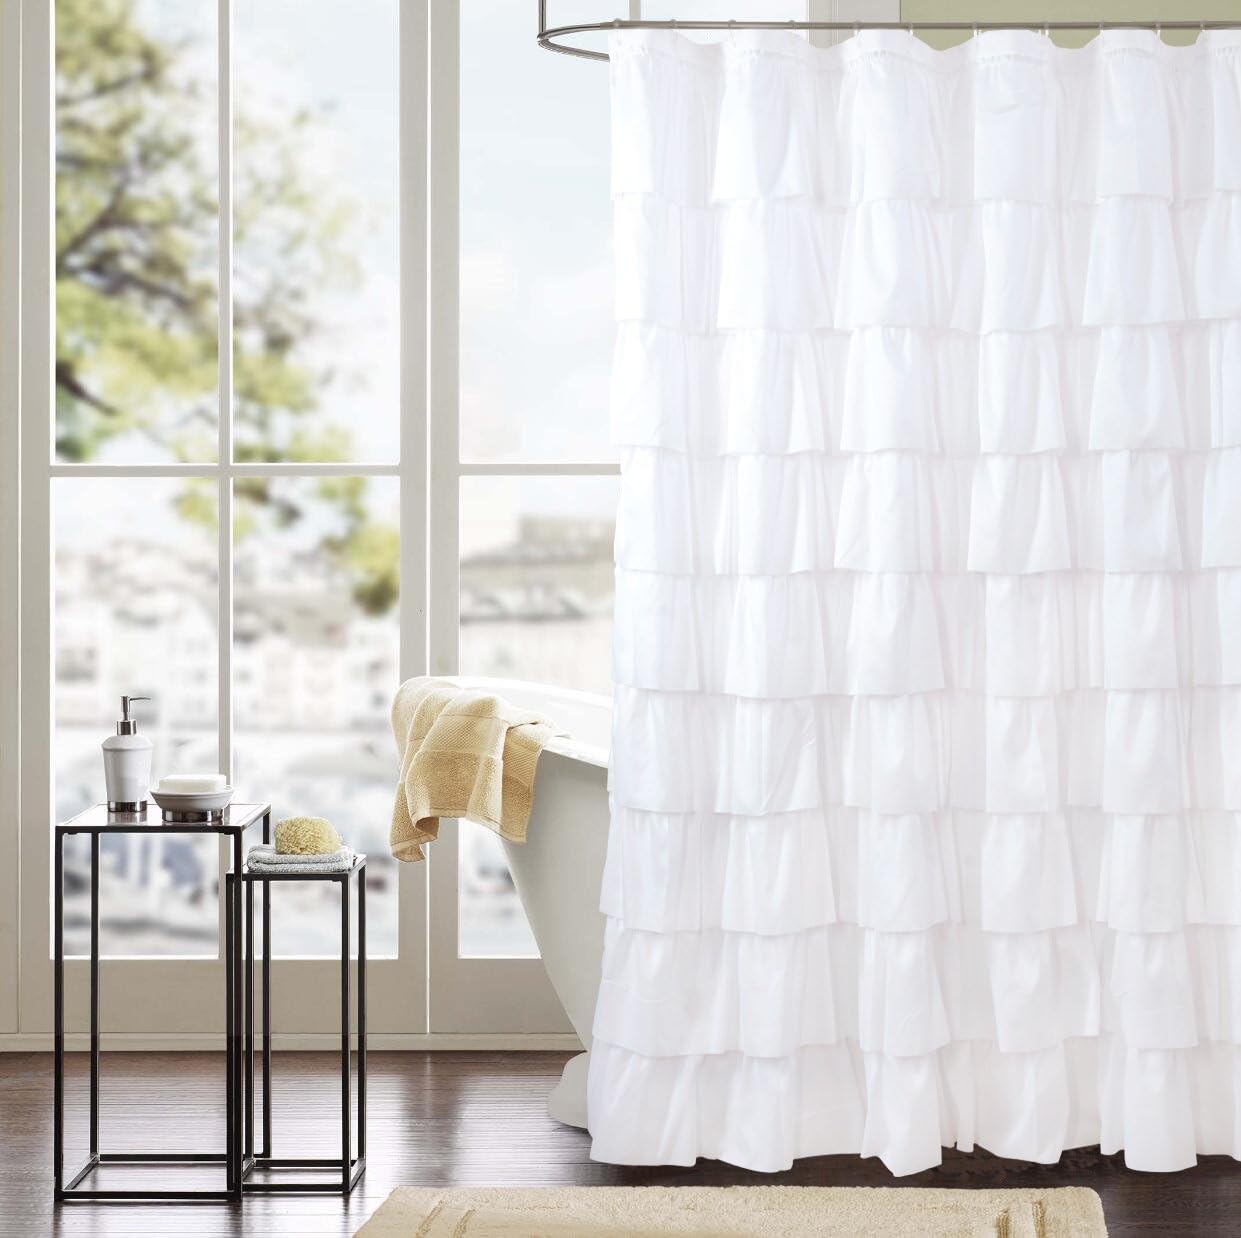 WestWeir White Ruffle Shower Curtain – Farmhouse Cloth Bathroom 72 x 72 Inches Texture Fashion Review